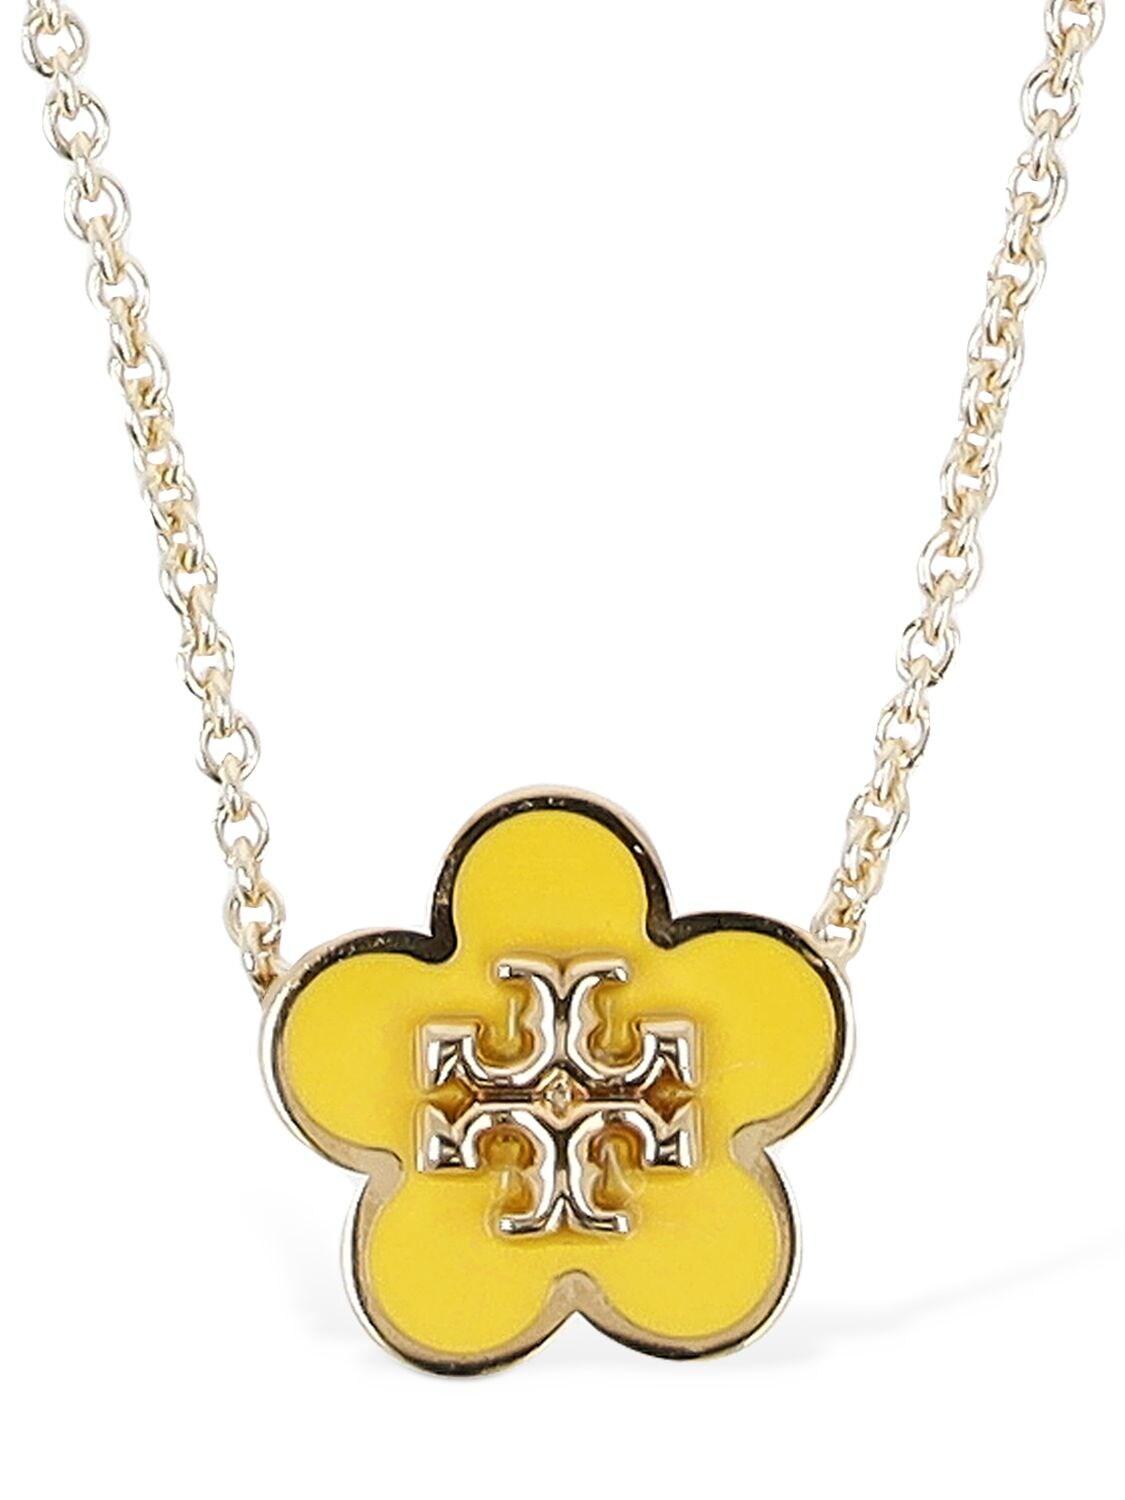 Tory Burch Kira Enamel Flower Pendant Necklace in Yellow | Lyst UK